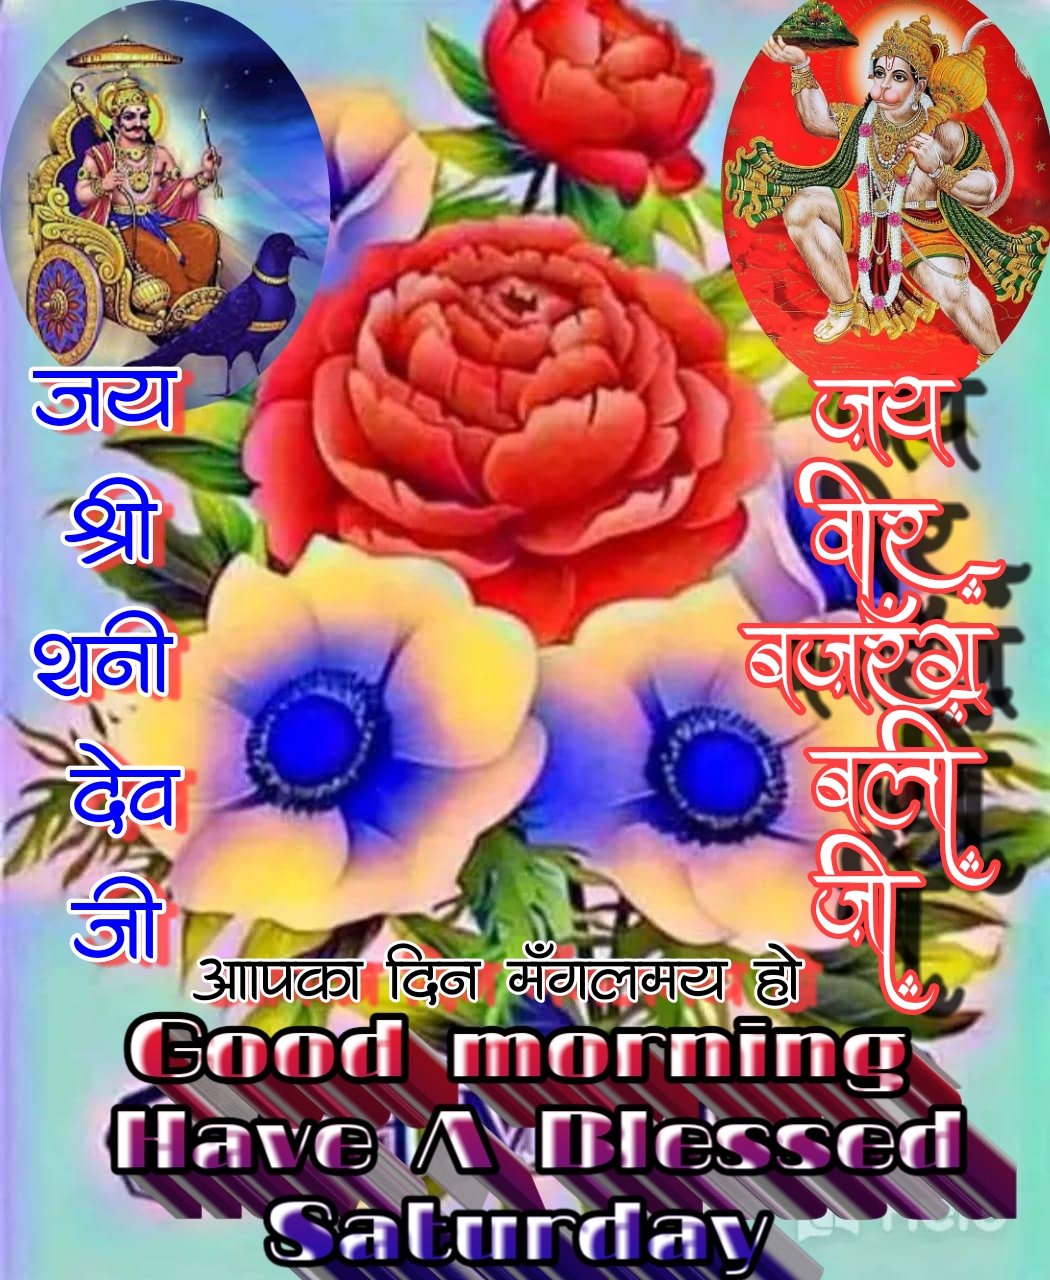 Uzivatel Sanjeev Sharma Na Twitteru Good Morning To All My Friends Have A Blessed Saturday To All Of You Jai Shiri Shanidev Ji Jai Bajrangbali Ji T Co Daqrvwadjh Twitter